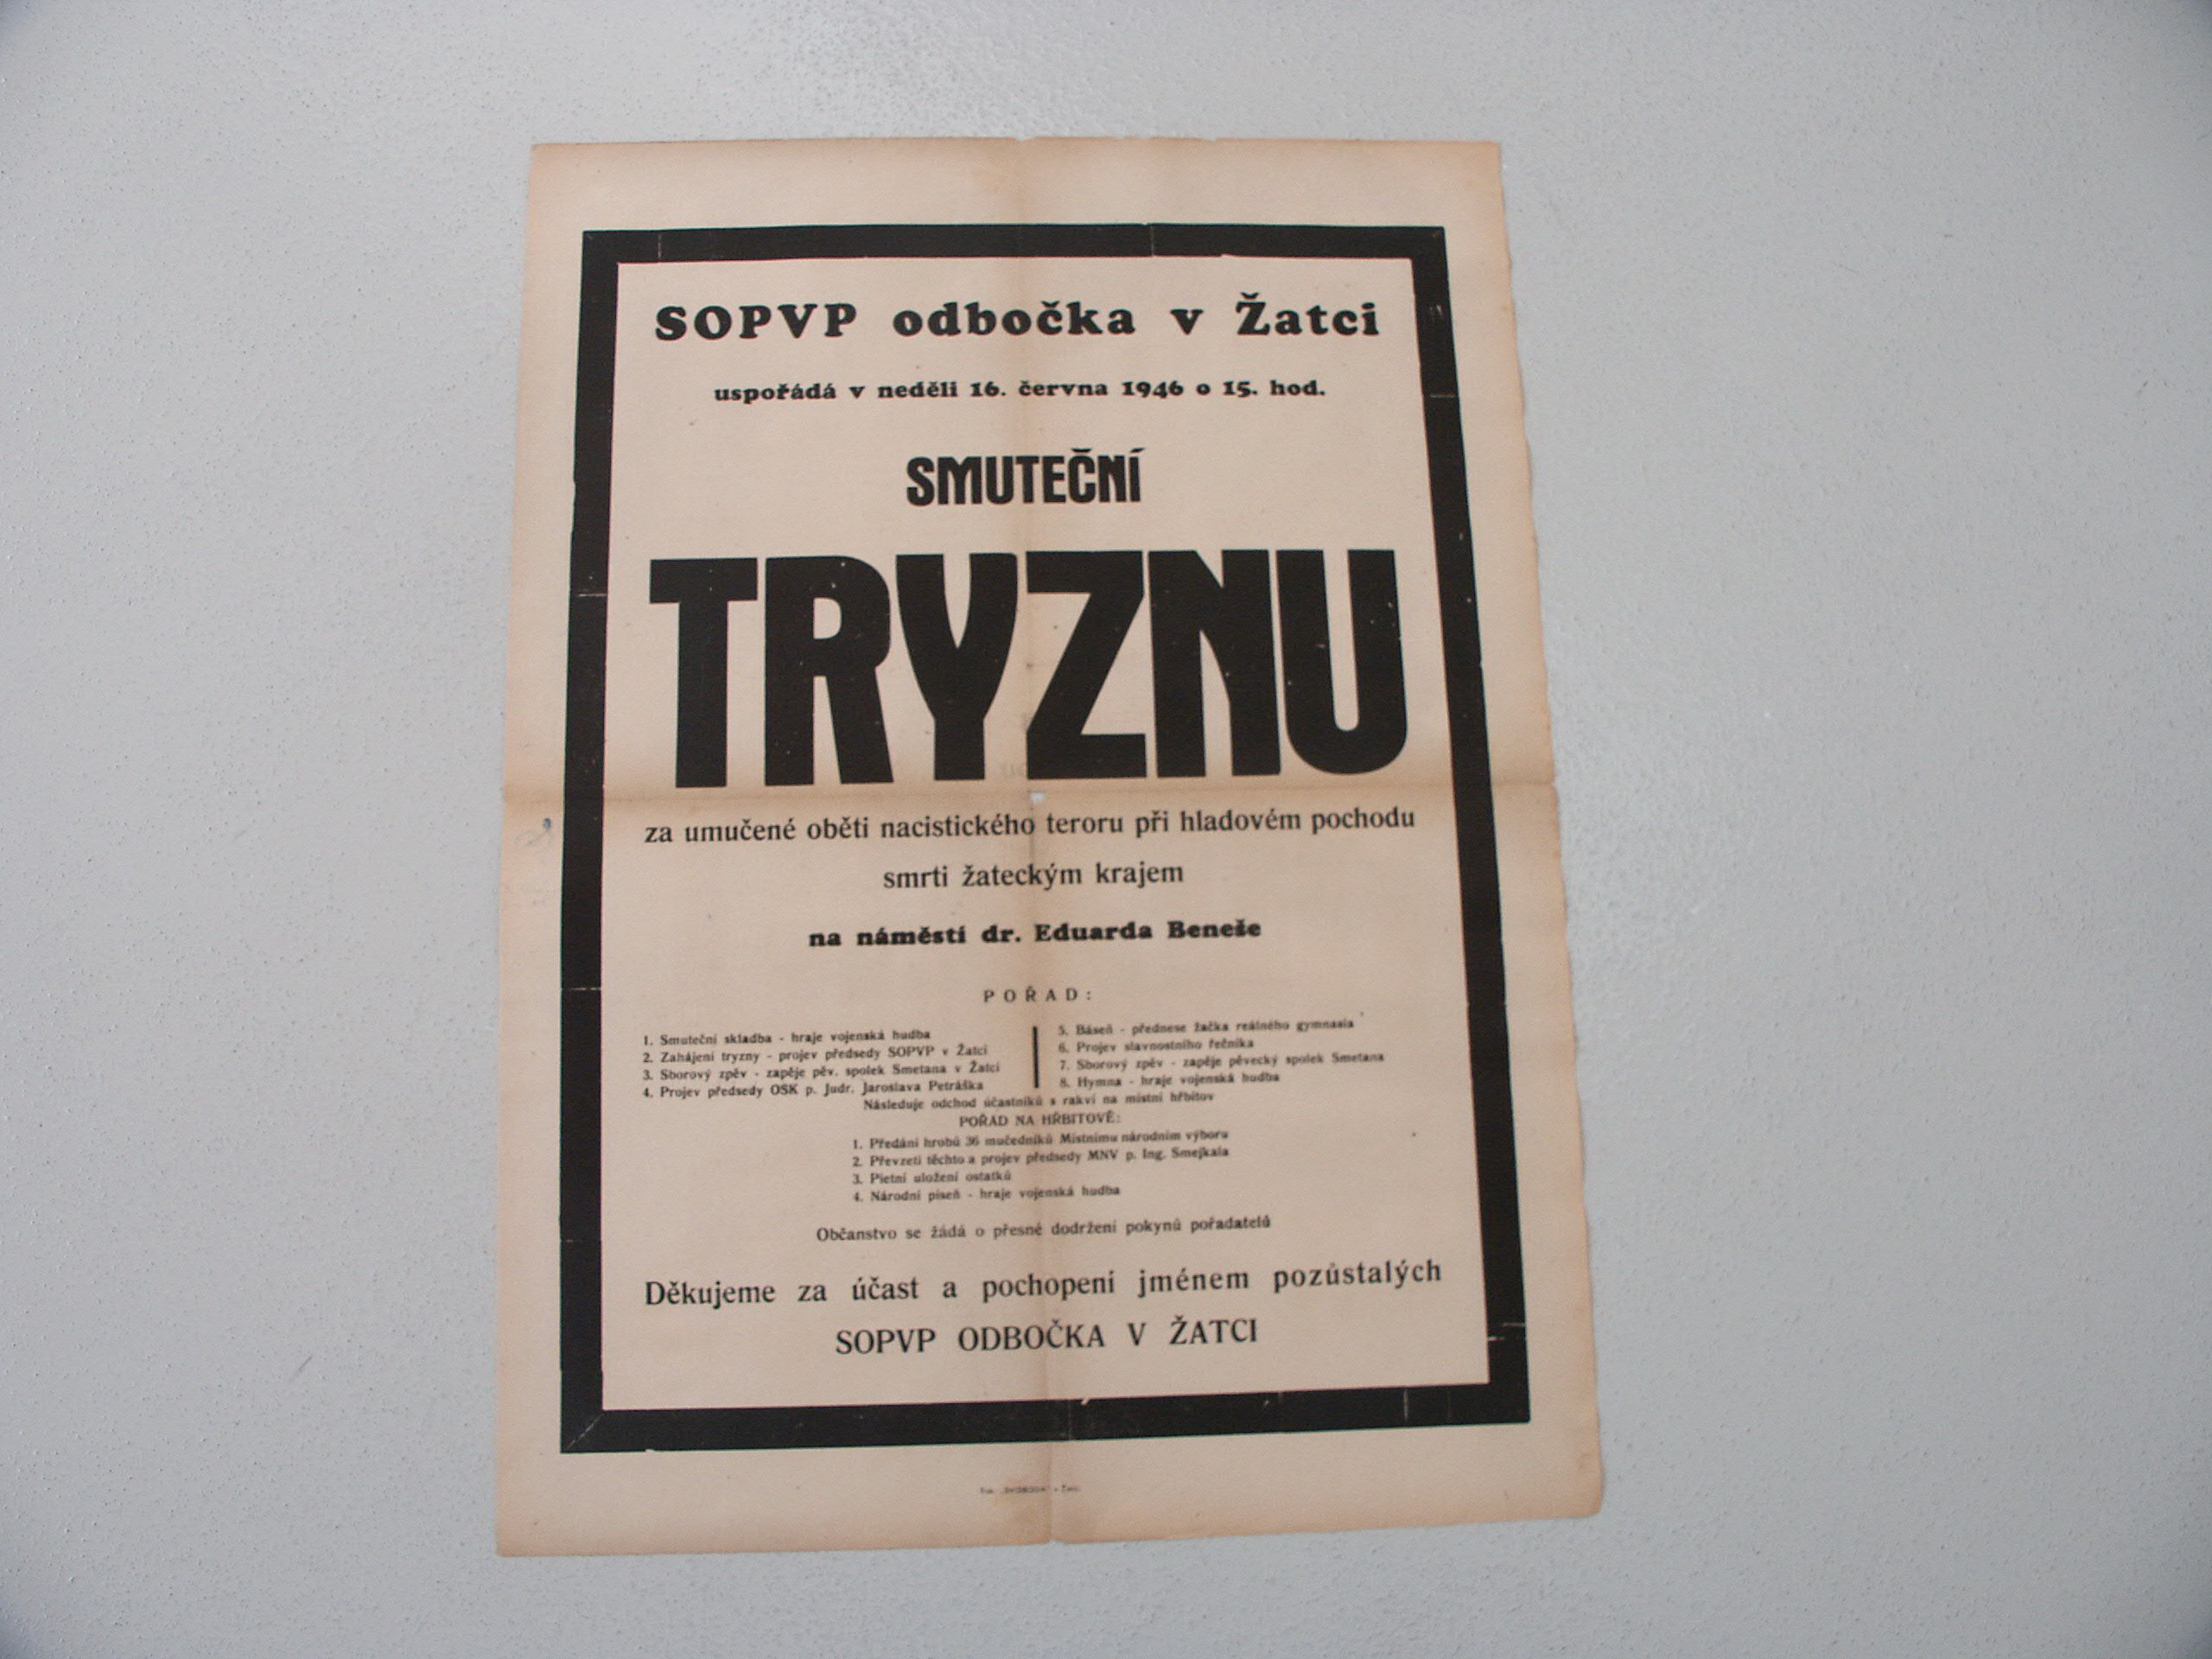 Plakát zvoucí na smuteční tryznu na náměstí E. Beneše v Žatci 1946